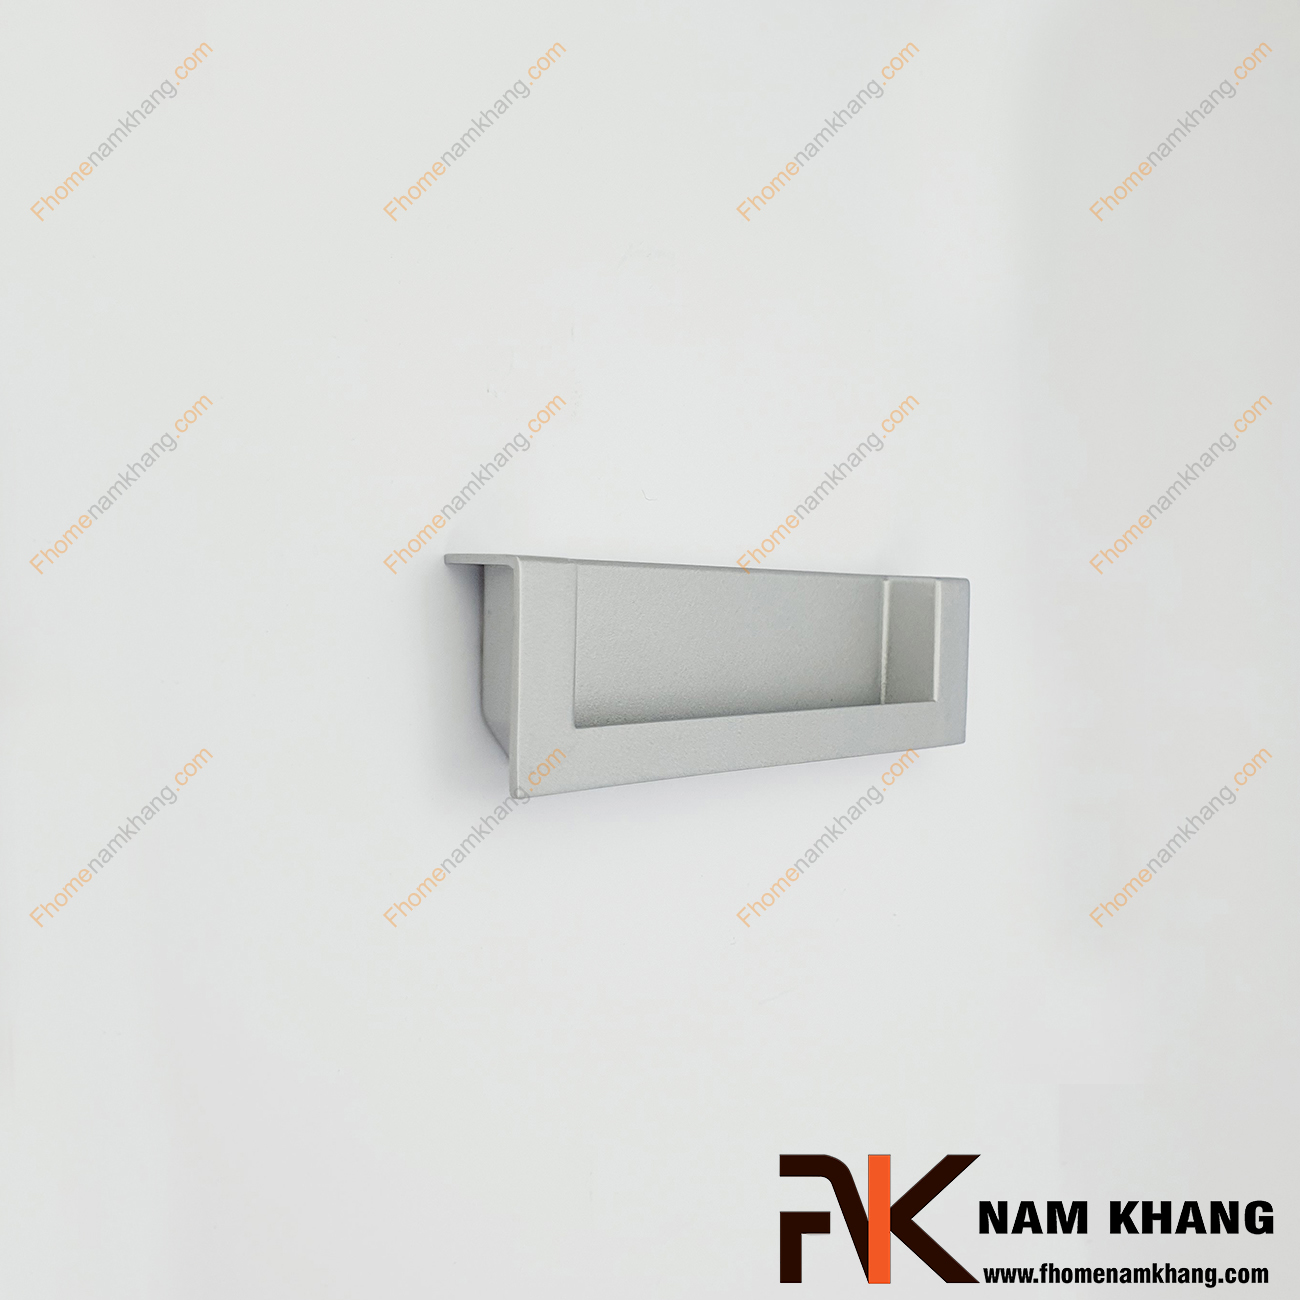 Tay nắm tủ dạng thanh âm màu nhôm mờ NK410L-NM , một mẫu tay nắm cửa tủ, cửa chính rất độc đáo. Được thiết kế với khuôn dạng thanh mảnh vuông góc và lắp đặt âm vào bên trong cánh cửa, điều này tăng khả năng ghép nối bền chặt hơn.